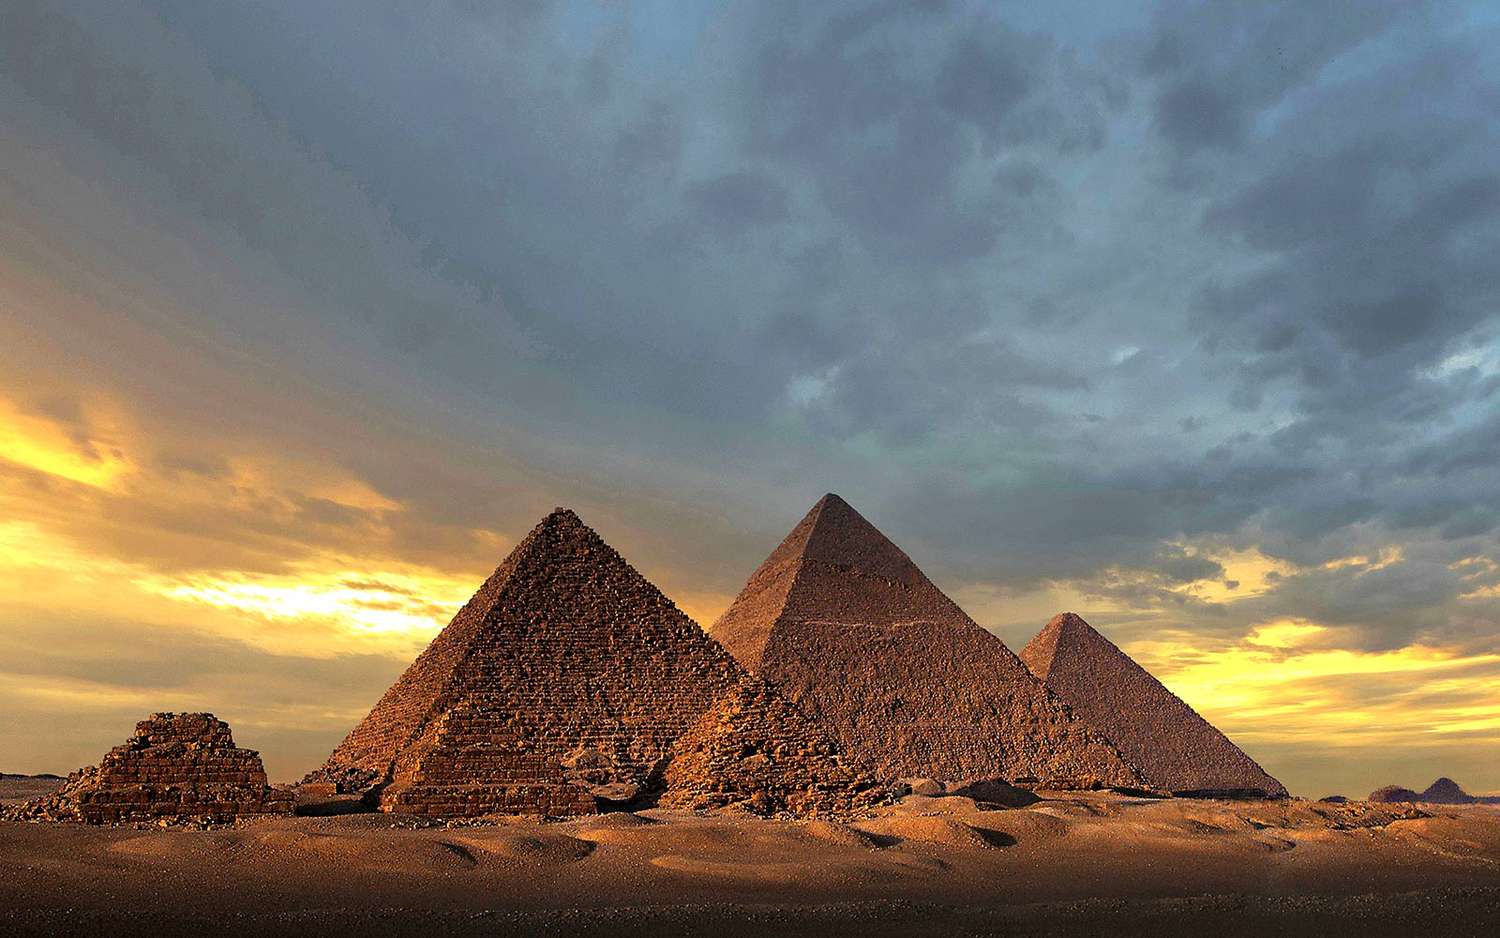 埃及开罗卢克索门票 吉萨金字塔群埃及博物馆 萨拉丁城堡  帝王谷